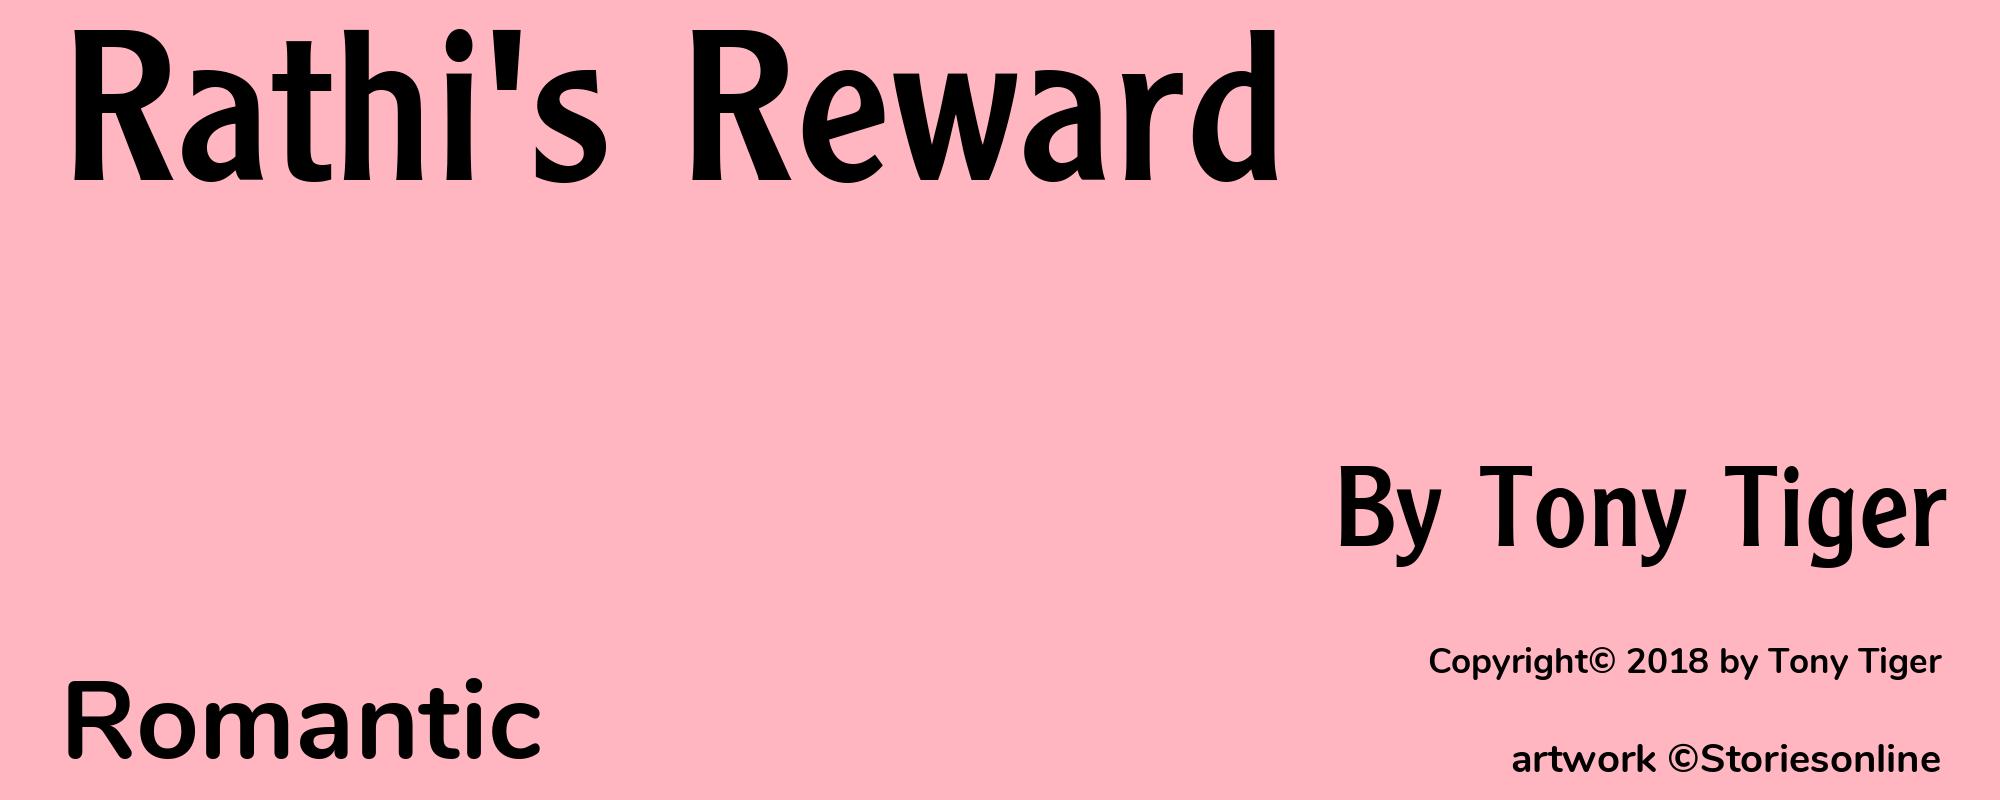 Rathi's Reward - Cover